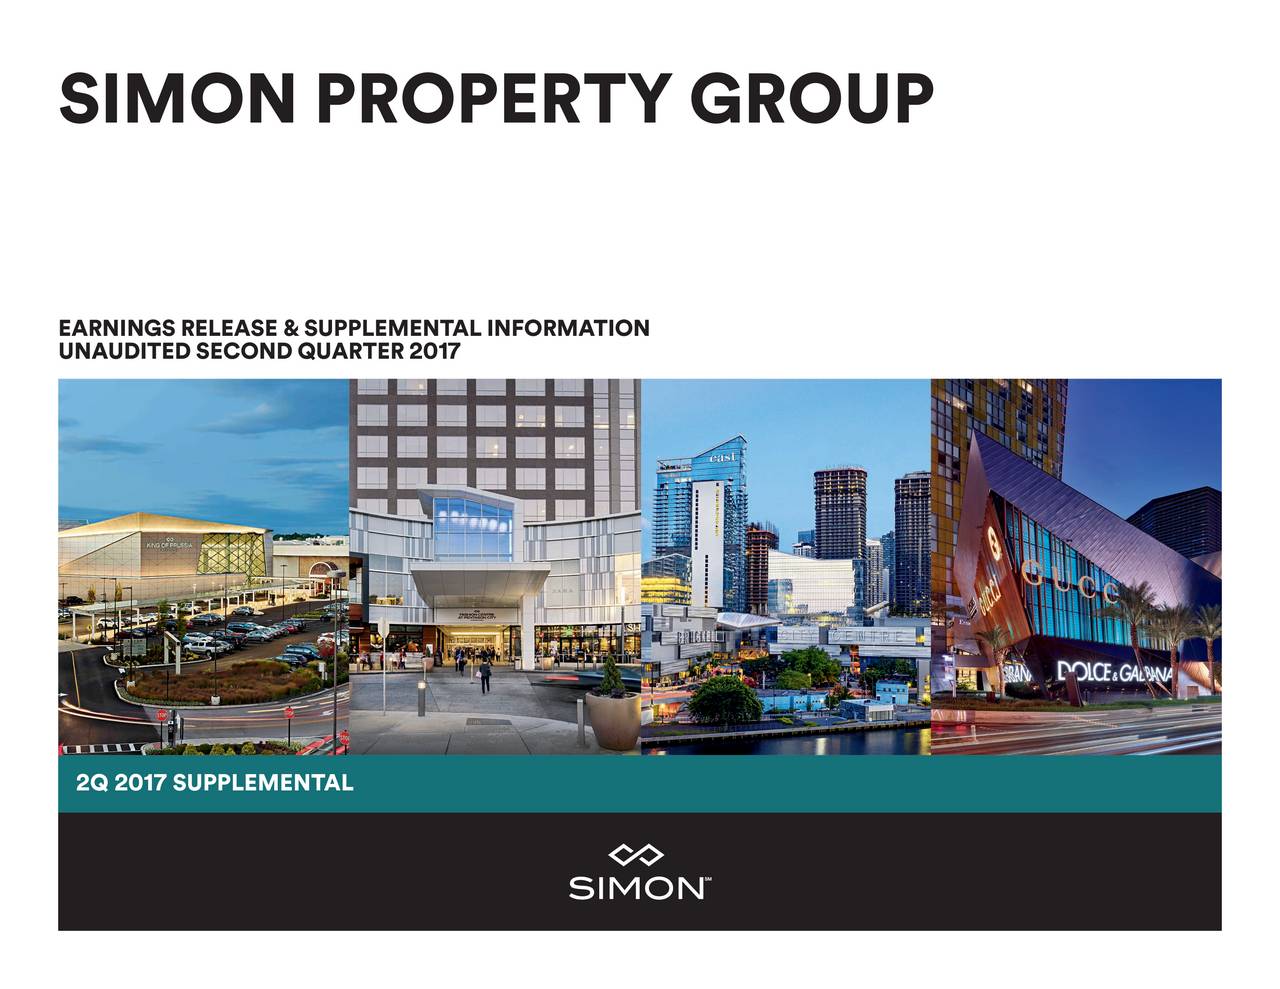 simon property group subsidiaries